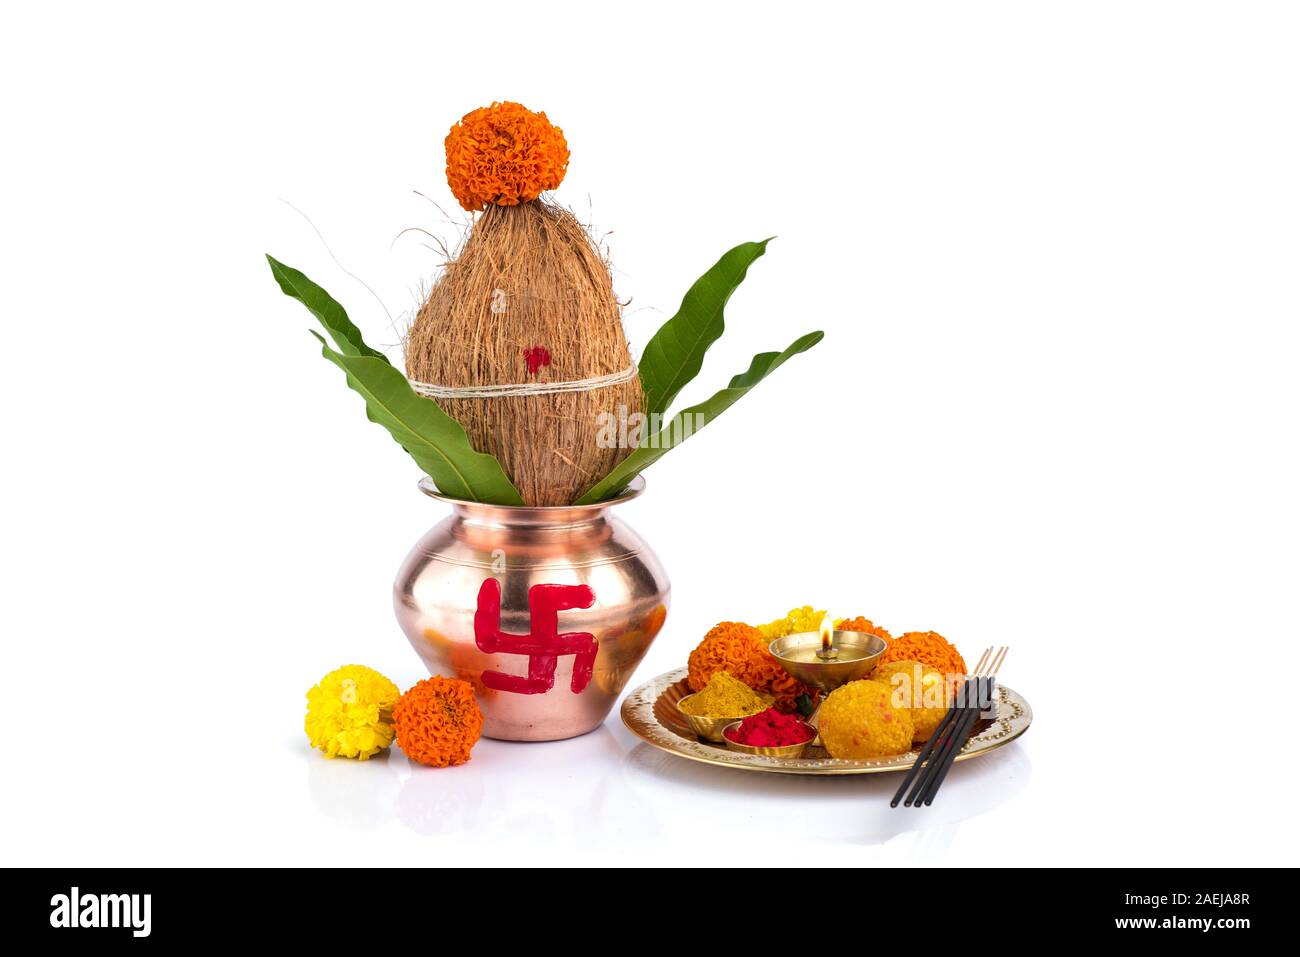 Một chiếc kính đồng Kalash với dừa và lá xoài, kèm theo thali pooja truyền thống. Chúng tôi mang đến cho bạn một thế giới đầy màu sắc và hương thơm trong không gian của bạn. Hãy đón nhận vẻ đẹp tinh tế của sản phẩm này để tạo ra một không gian sống vô cùng thoải mái và đầy phong cách!